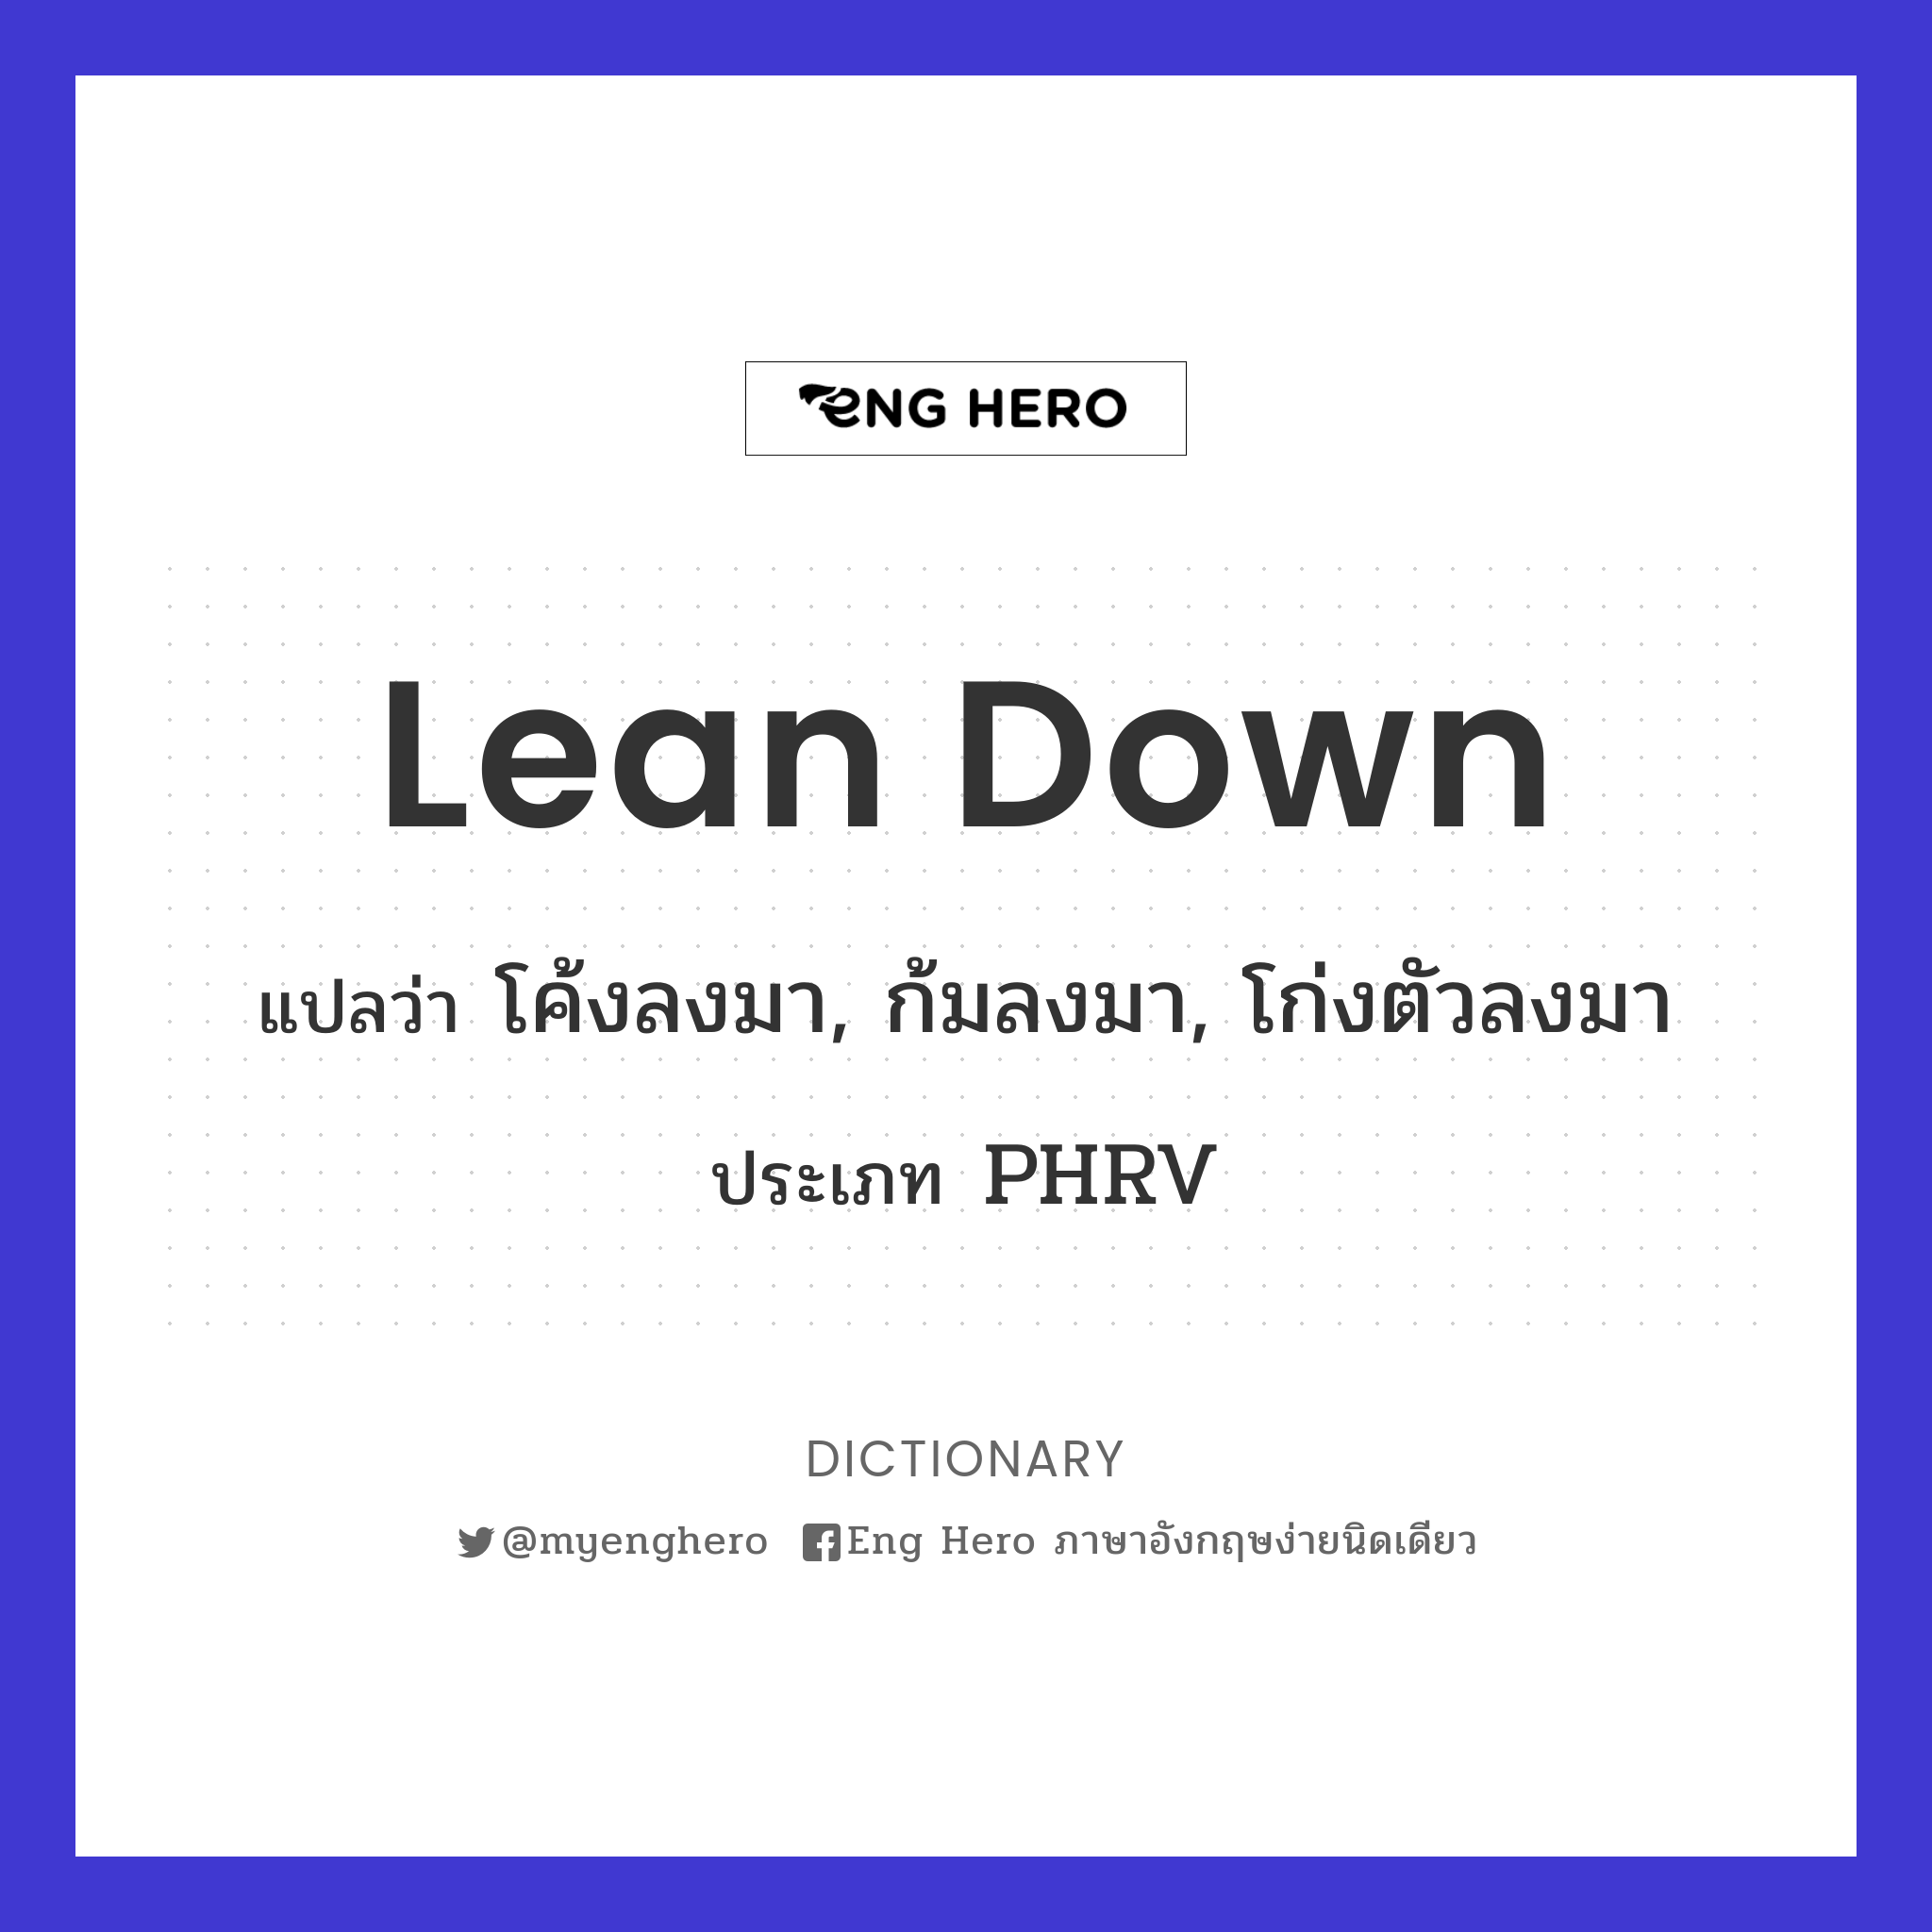 lean down